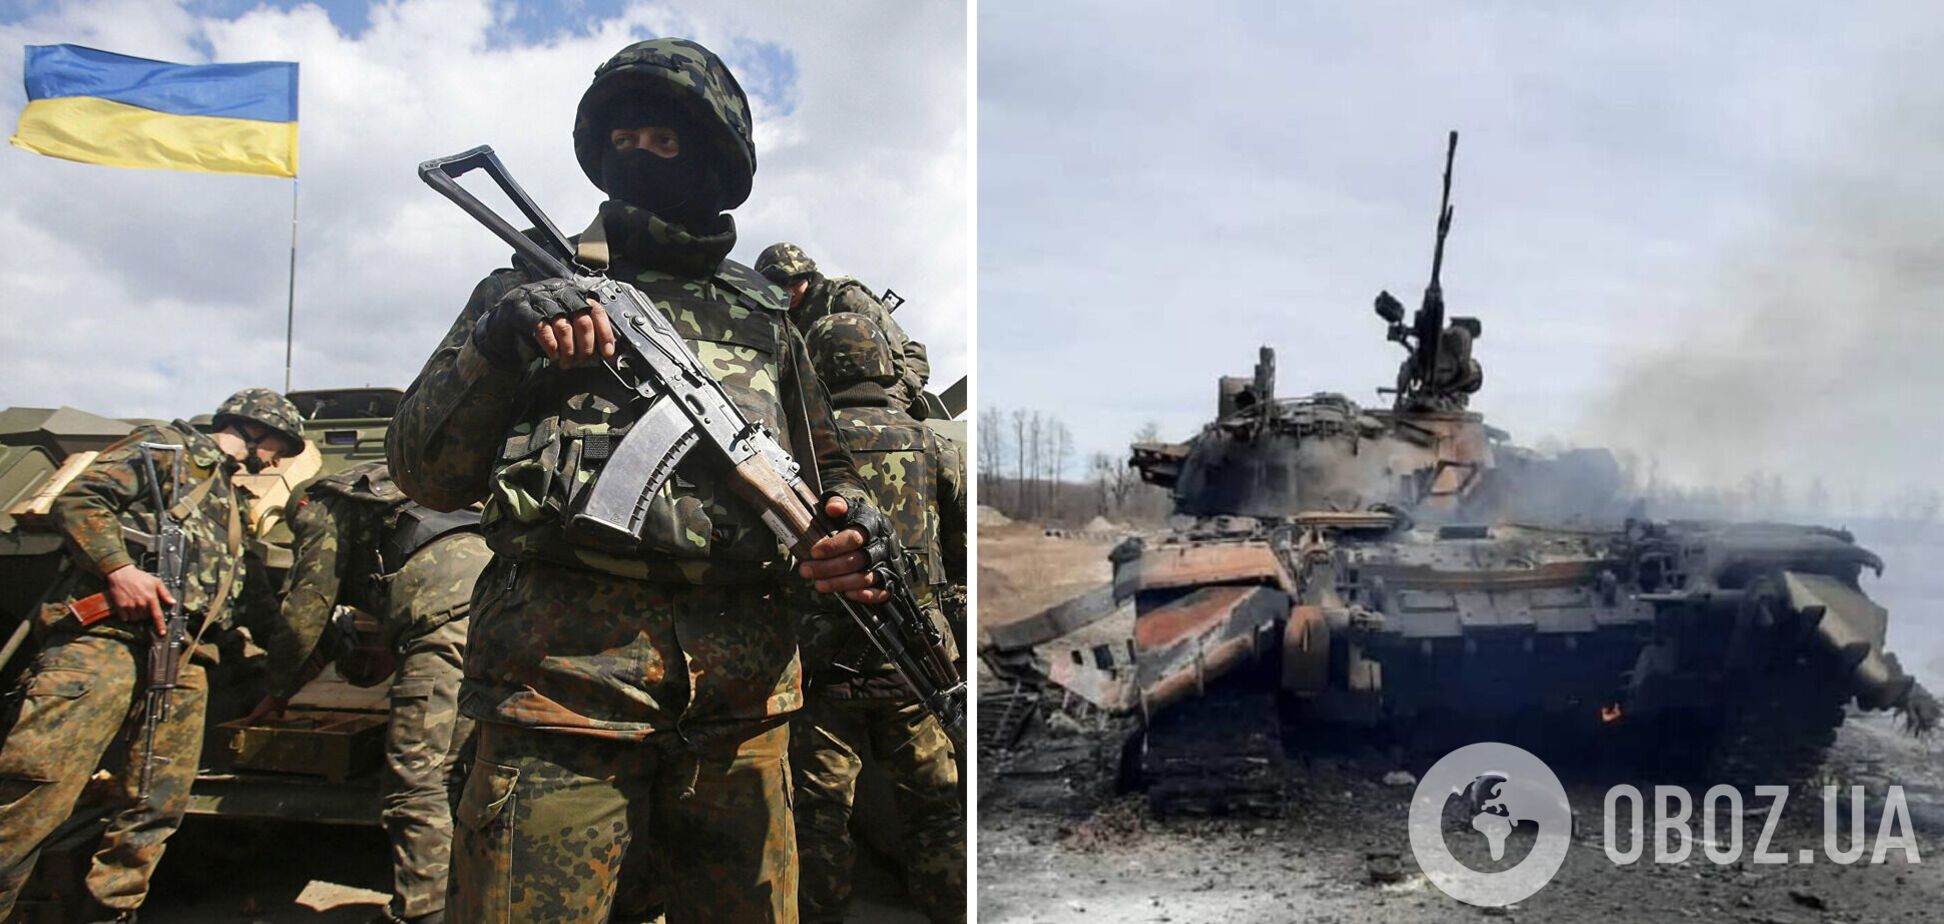 Бойцы ООС на Донбассе отбили 11 атак оккупантов и уничтожили технику противника